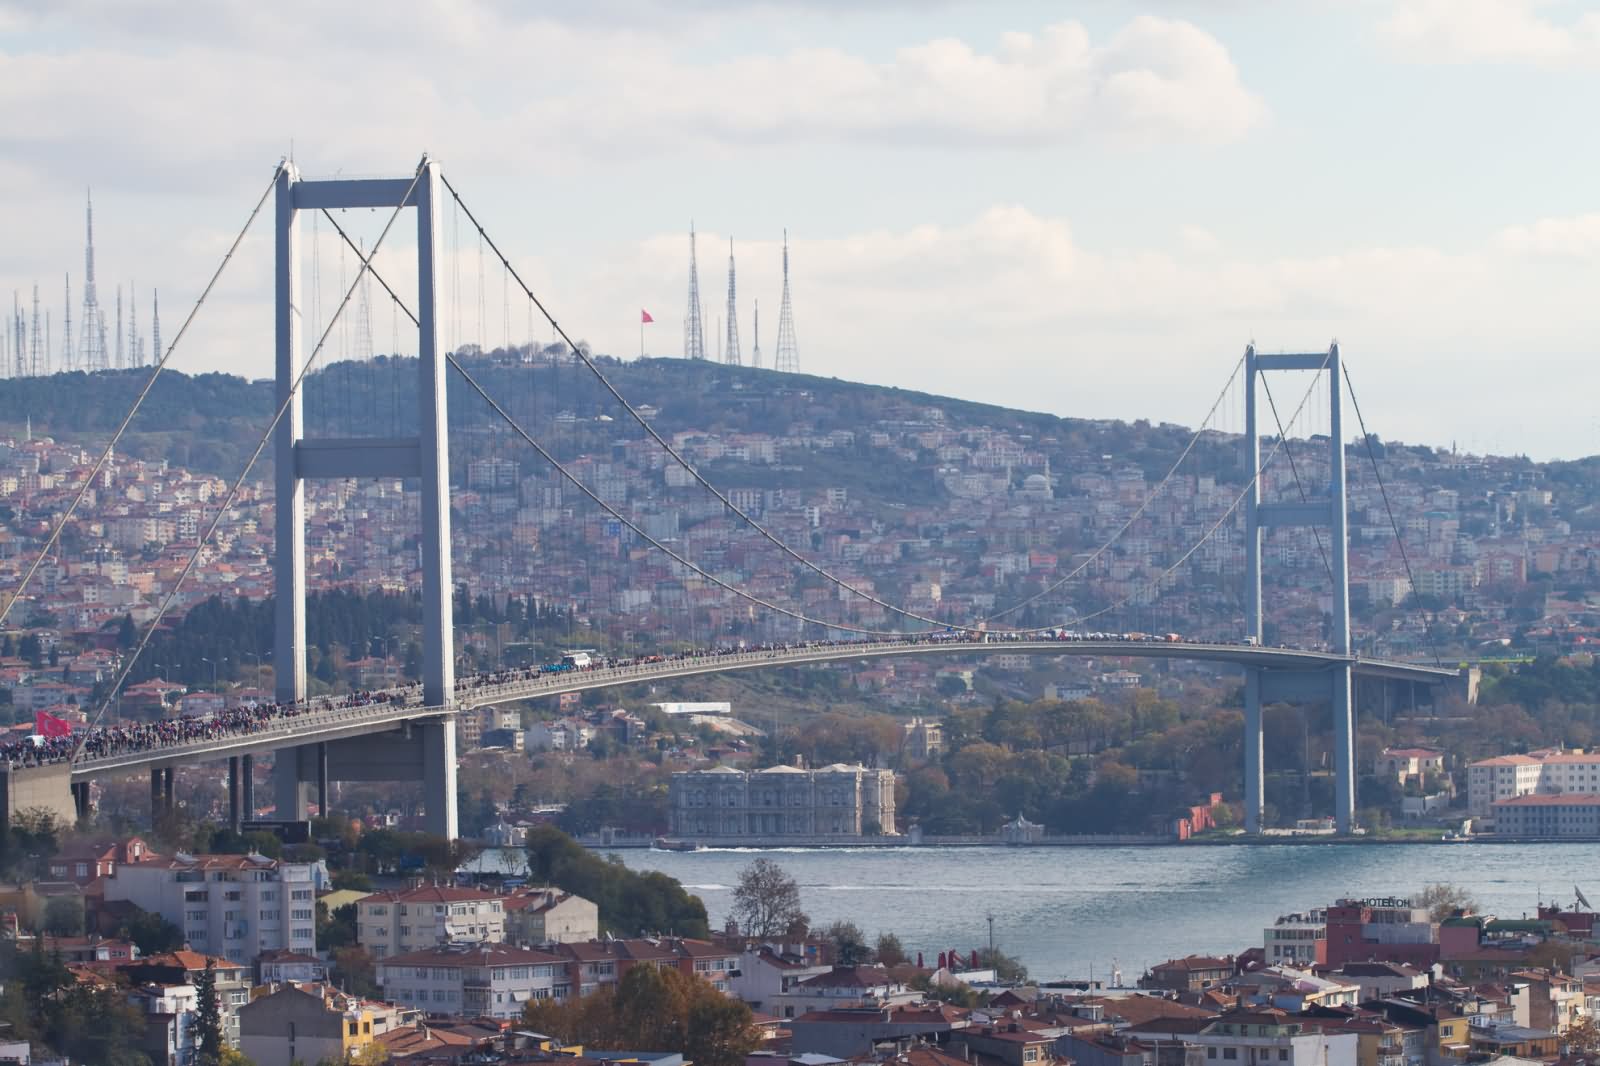 The Bosphorus Bridge Photo